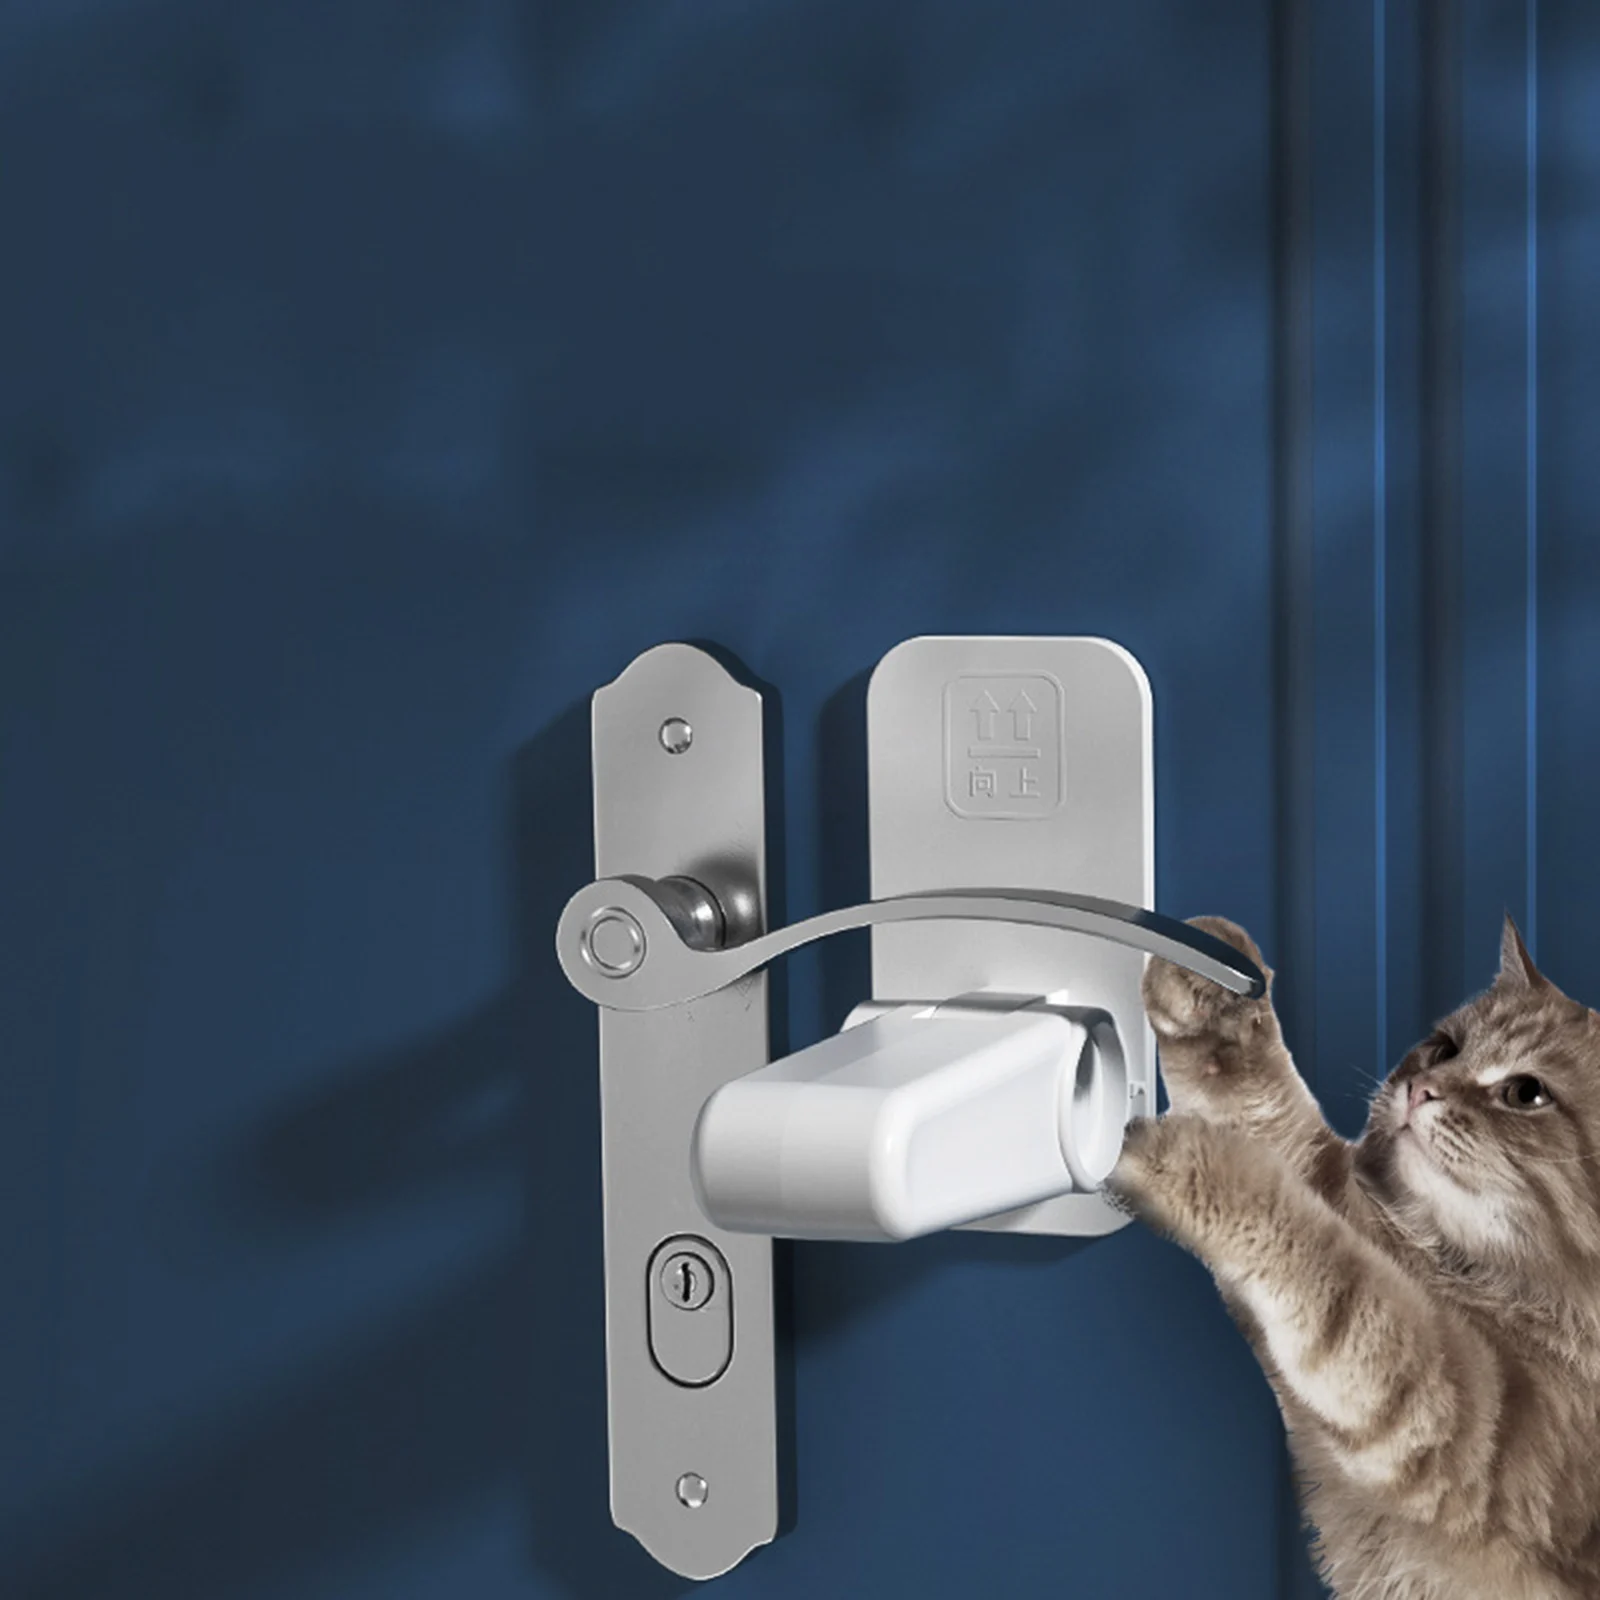 Door , Baby Proofing Door handle type lock, Childproofing Door Knob Lock Easy to Install